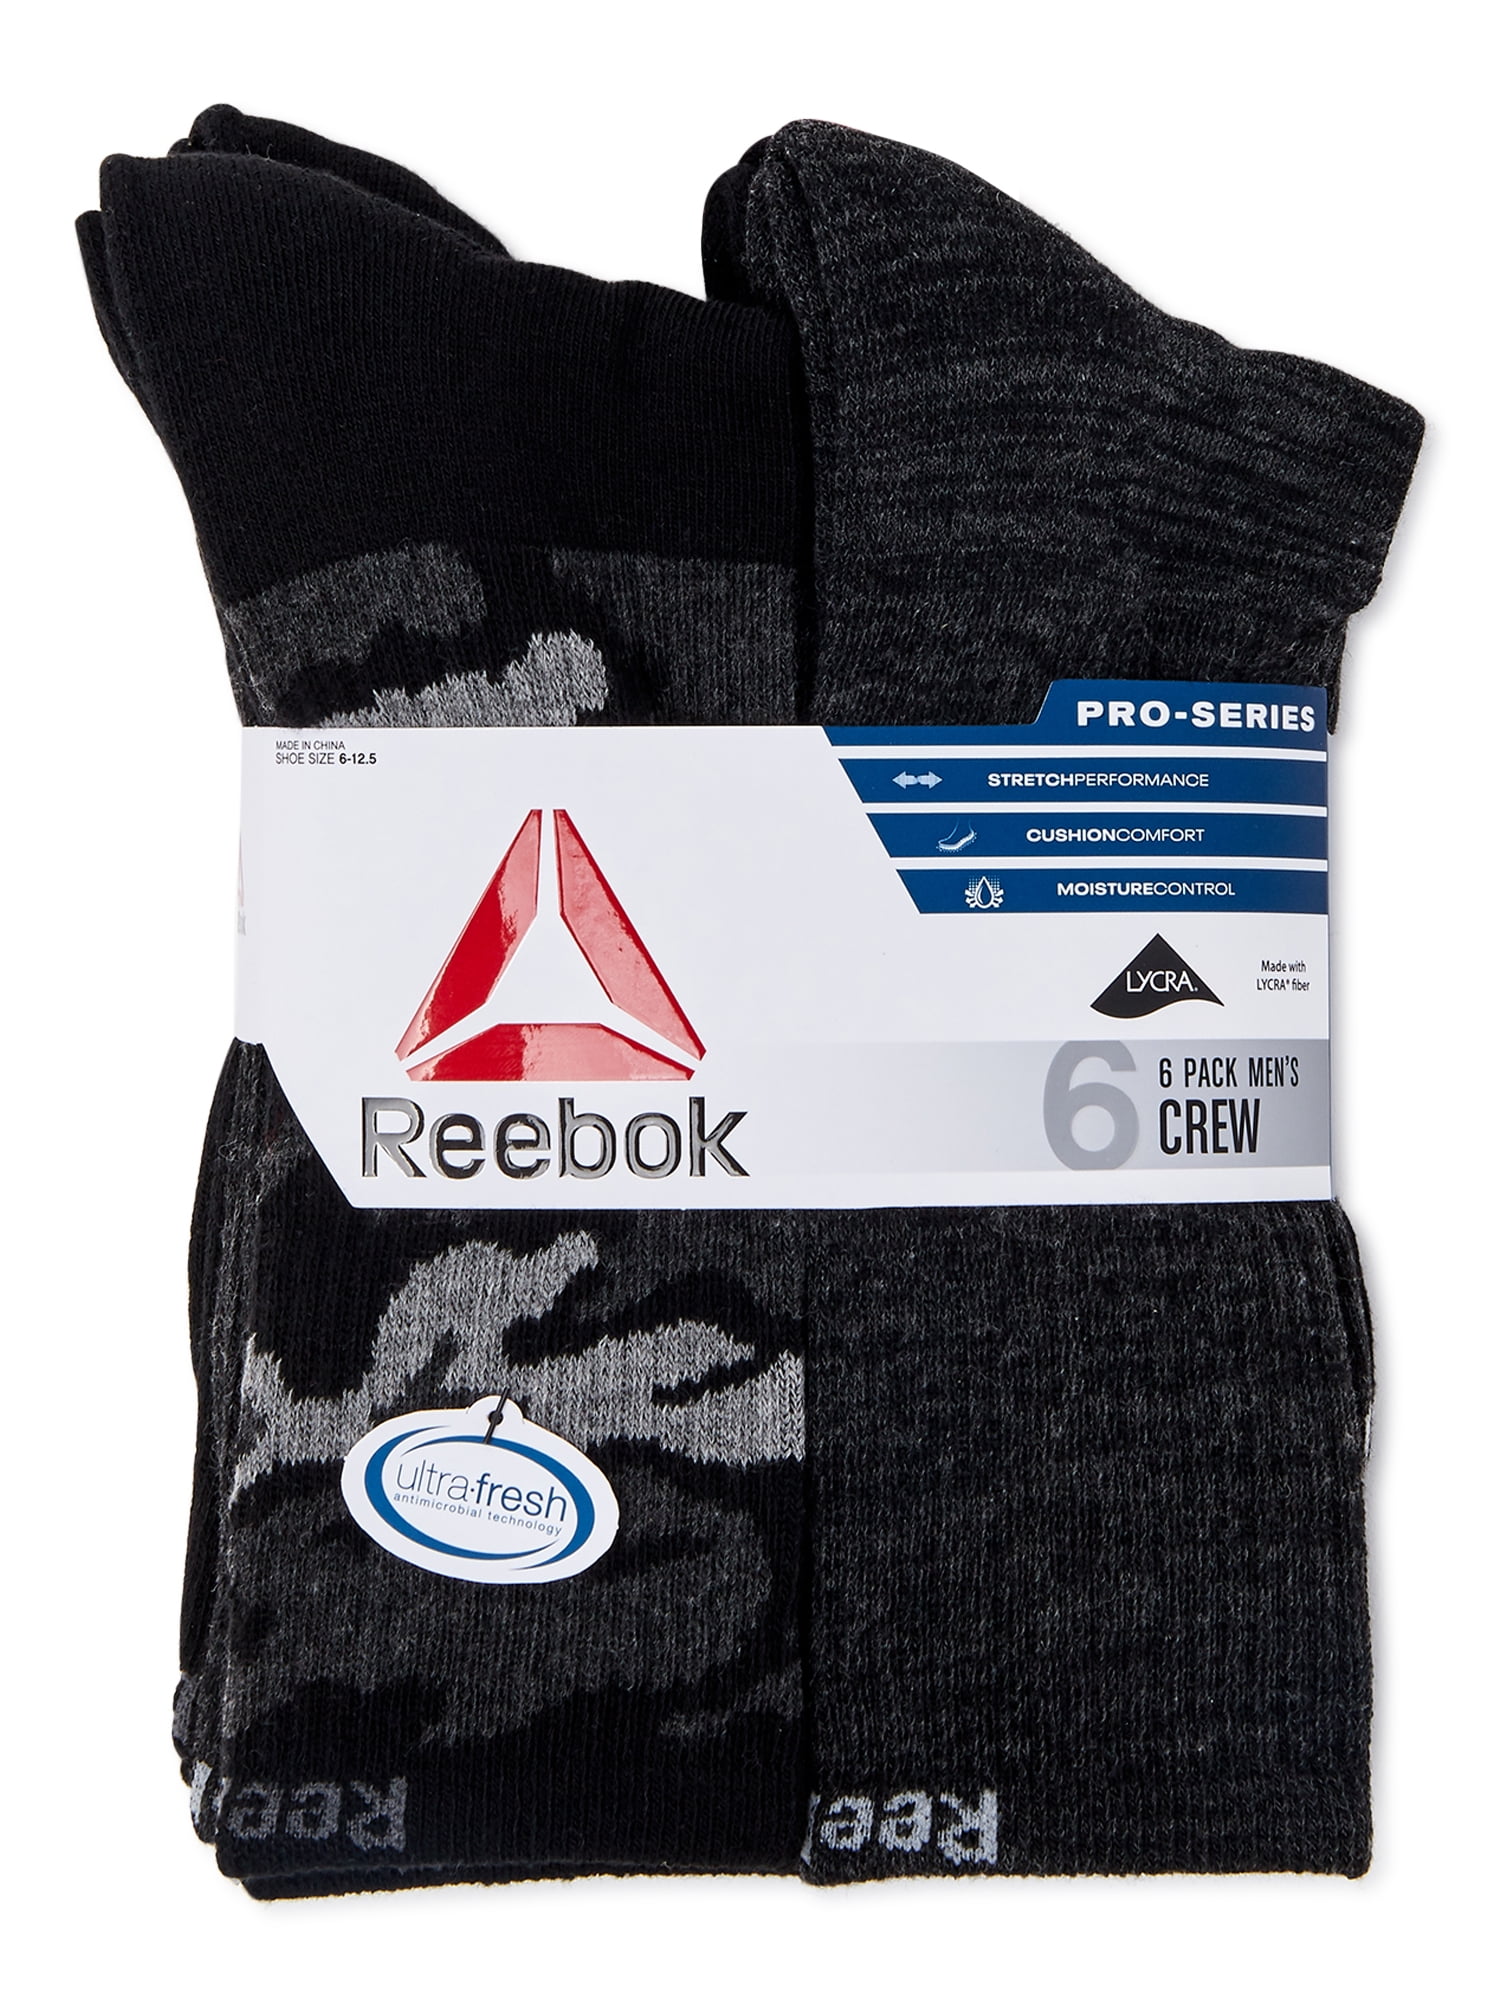 Reebok Pro Series Socks, 6-Pack - Walmart.com